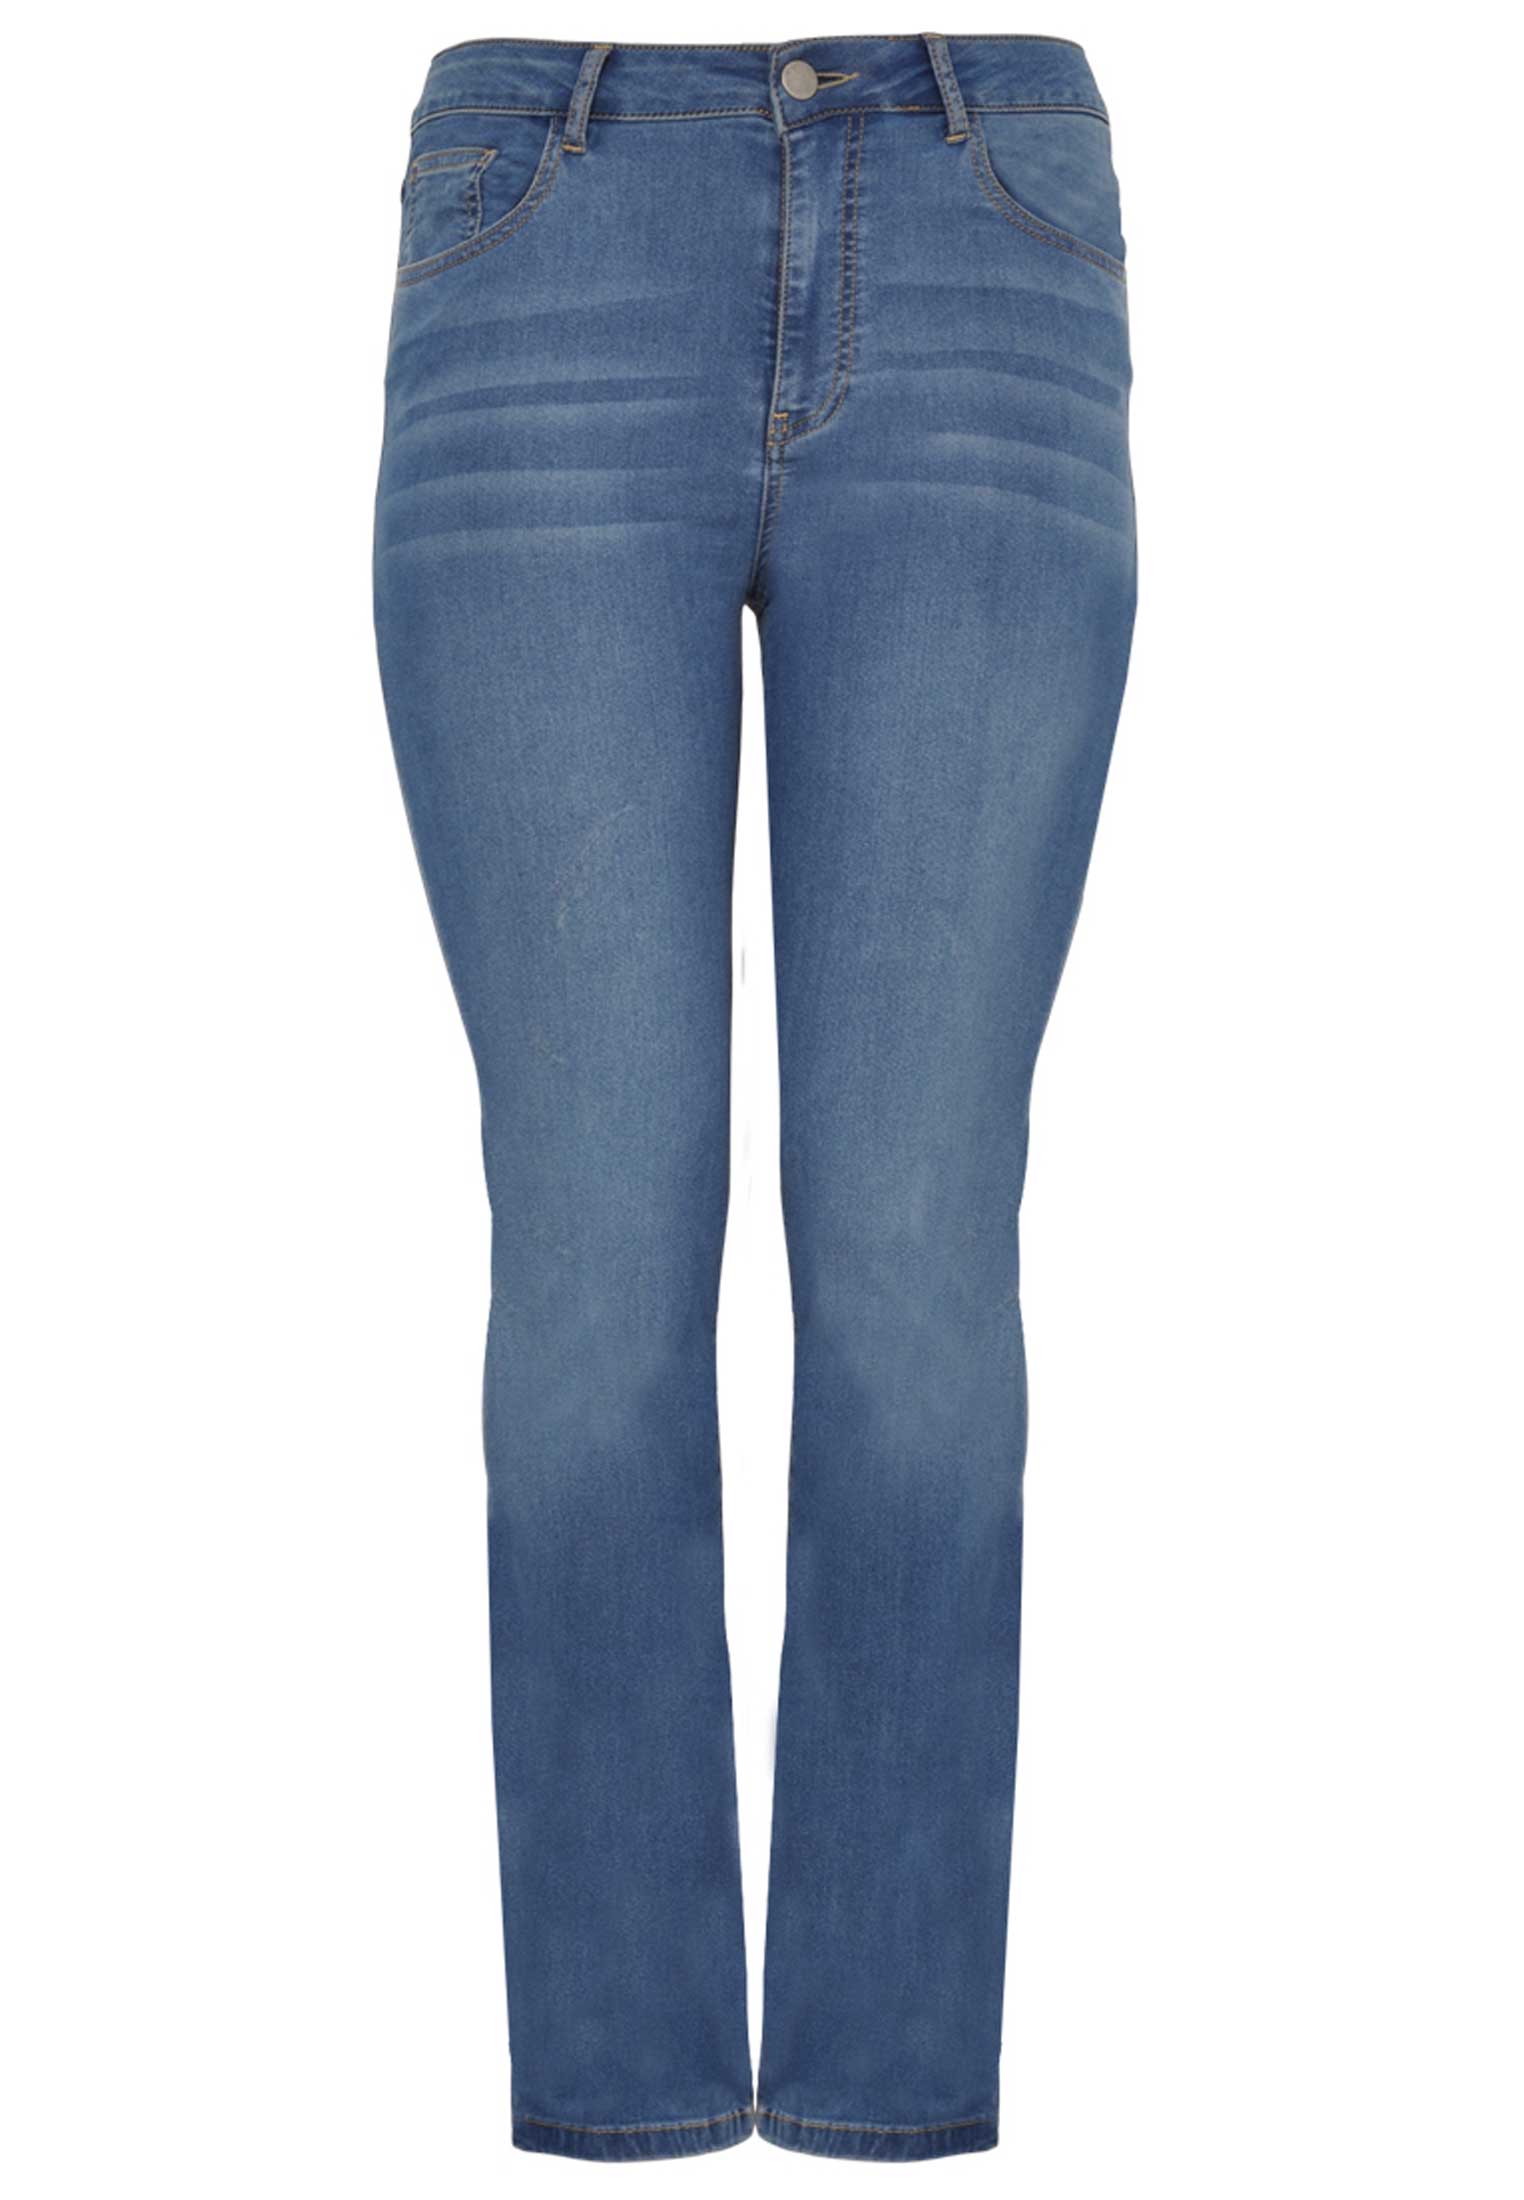 Jeans met rechte pijp 52 indigo